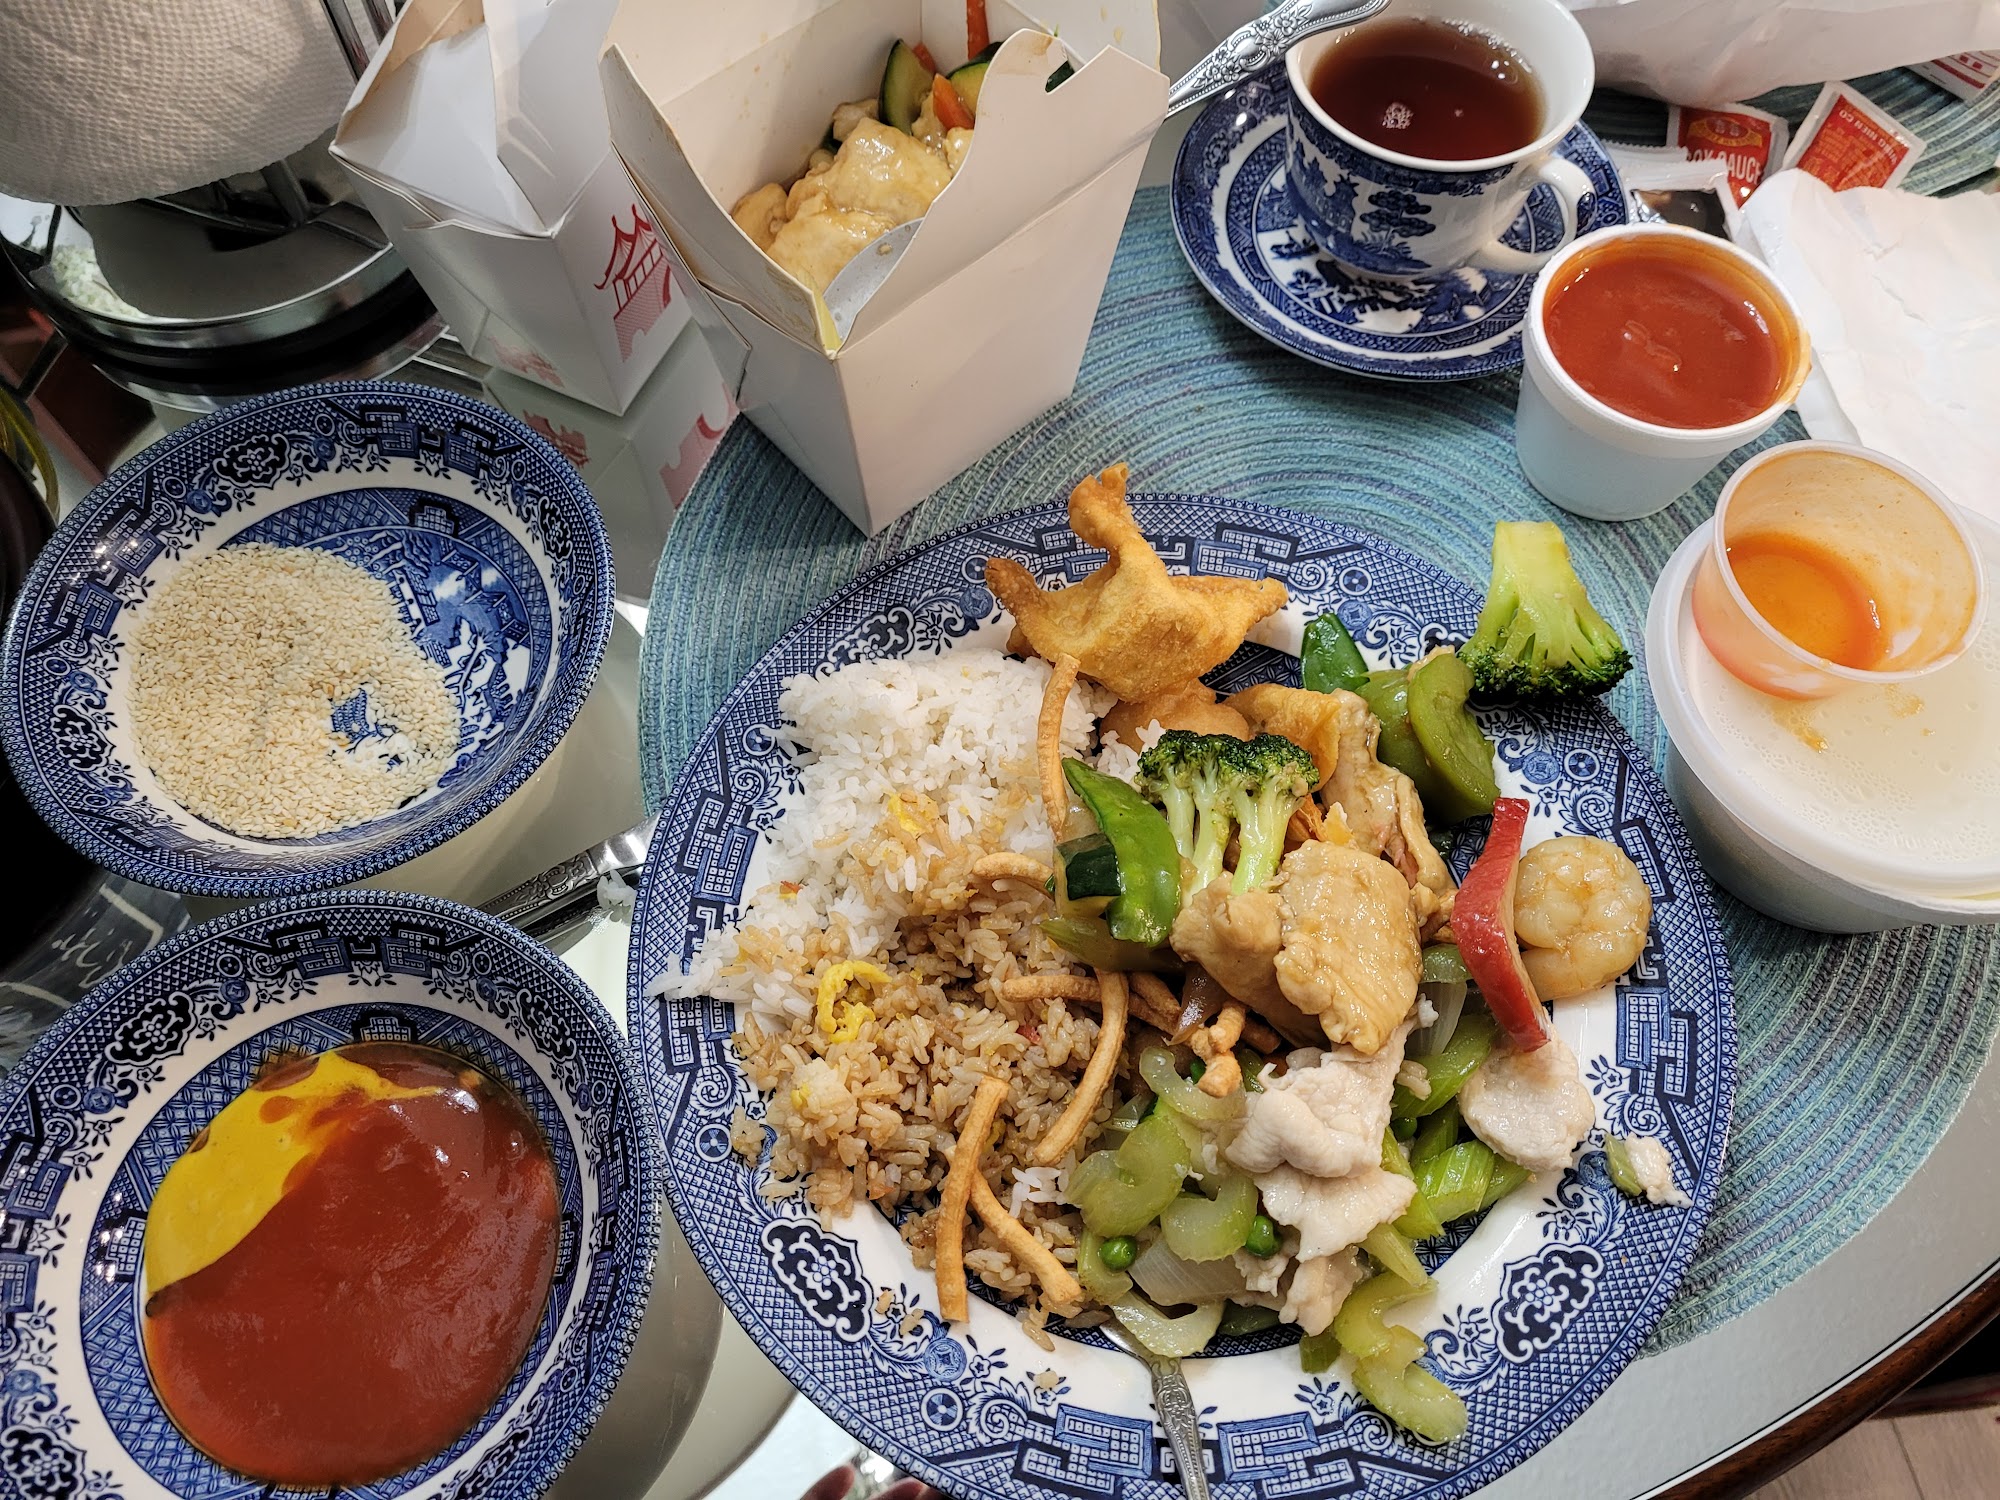 Ying Bun Restaurant